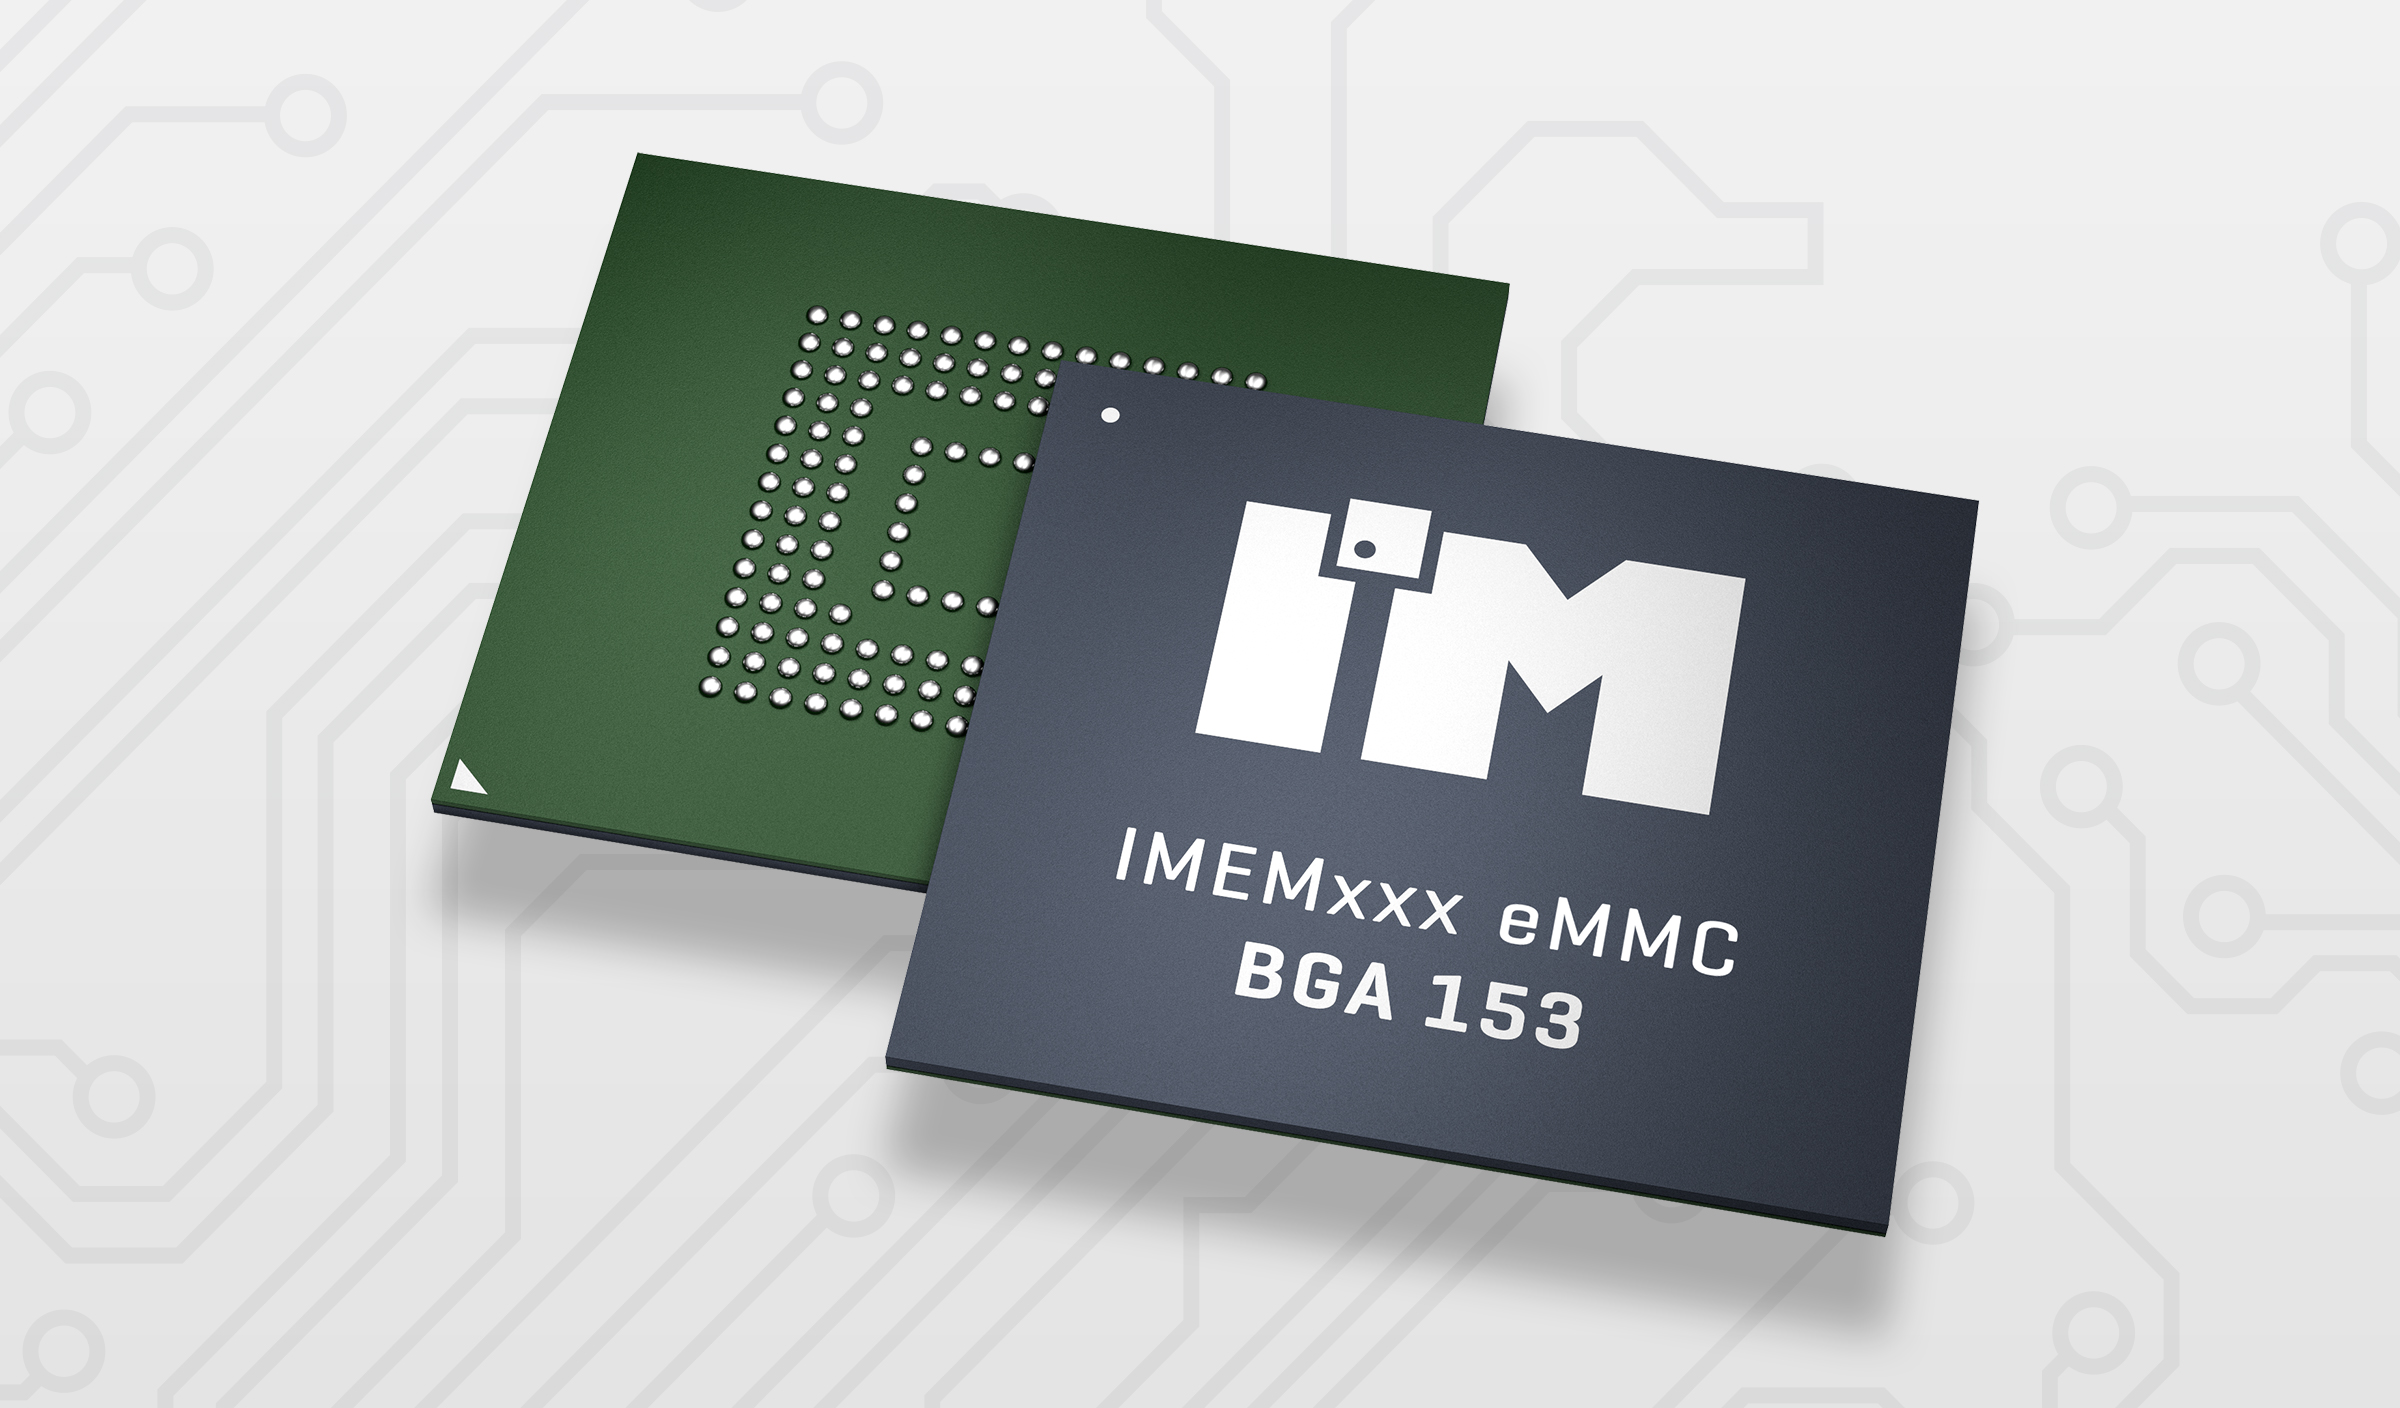 Pamięć eMMC 5.1, 4GB, IMC1B1A6C1A0A1I2A3A0000